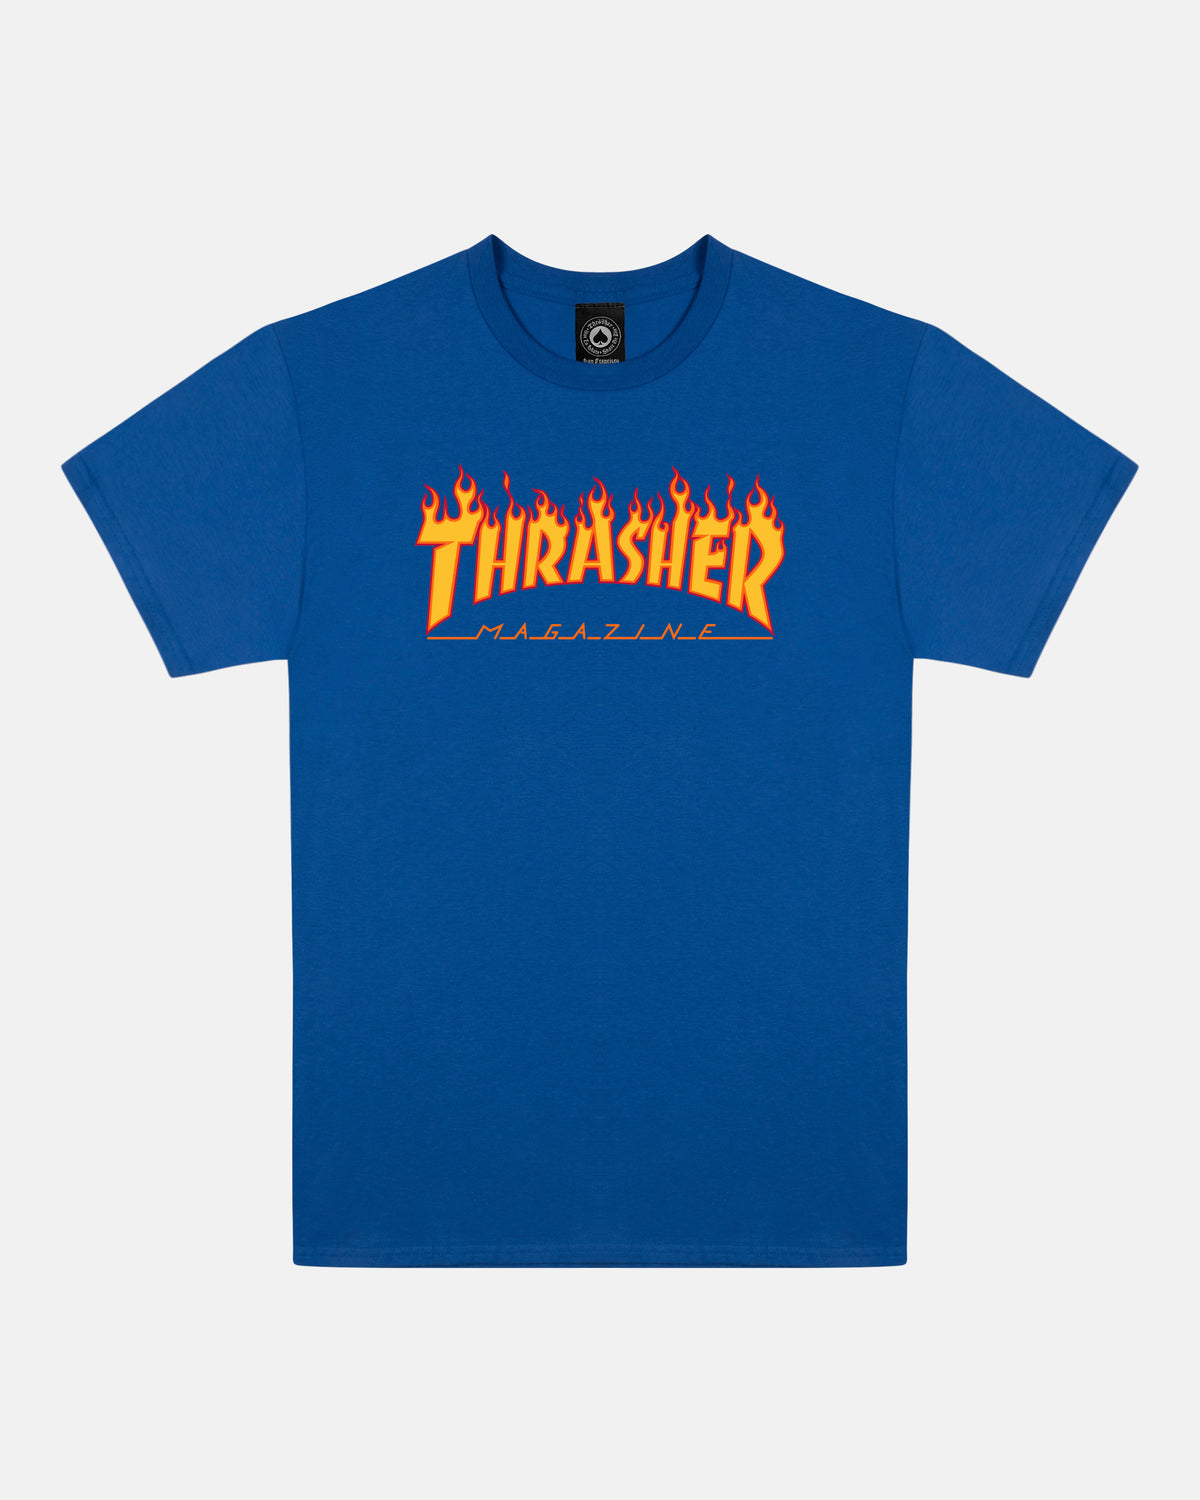 FLAME - TSHIRT - ROYAL BLUE – Thrasher Magazine